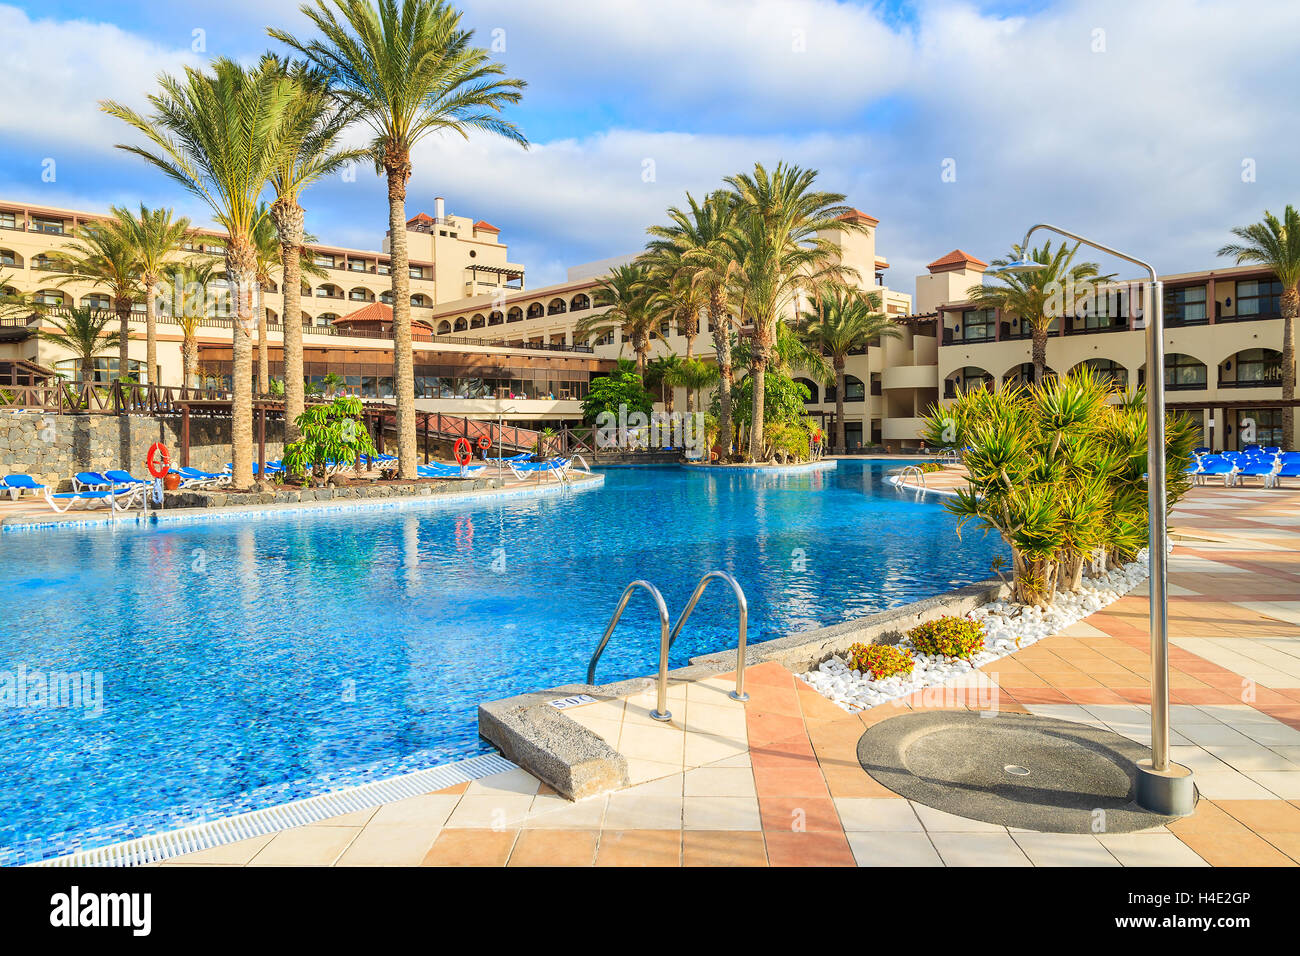 MORRO JABLE, FUERTEVENTURA - 6. Februar 2014: Schwimmbad von einem Luxus-Hotel Barcelo Jandia Mar in Stadt von Morro Jable. Dies ist ein beliebtes Urlaubsziel für Touristen auf der Insel Fuerteventura. Stockfoto